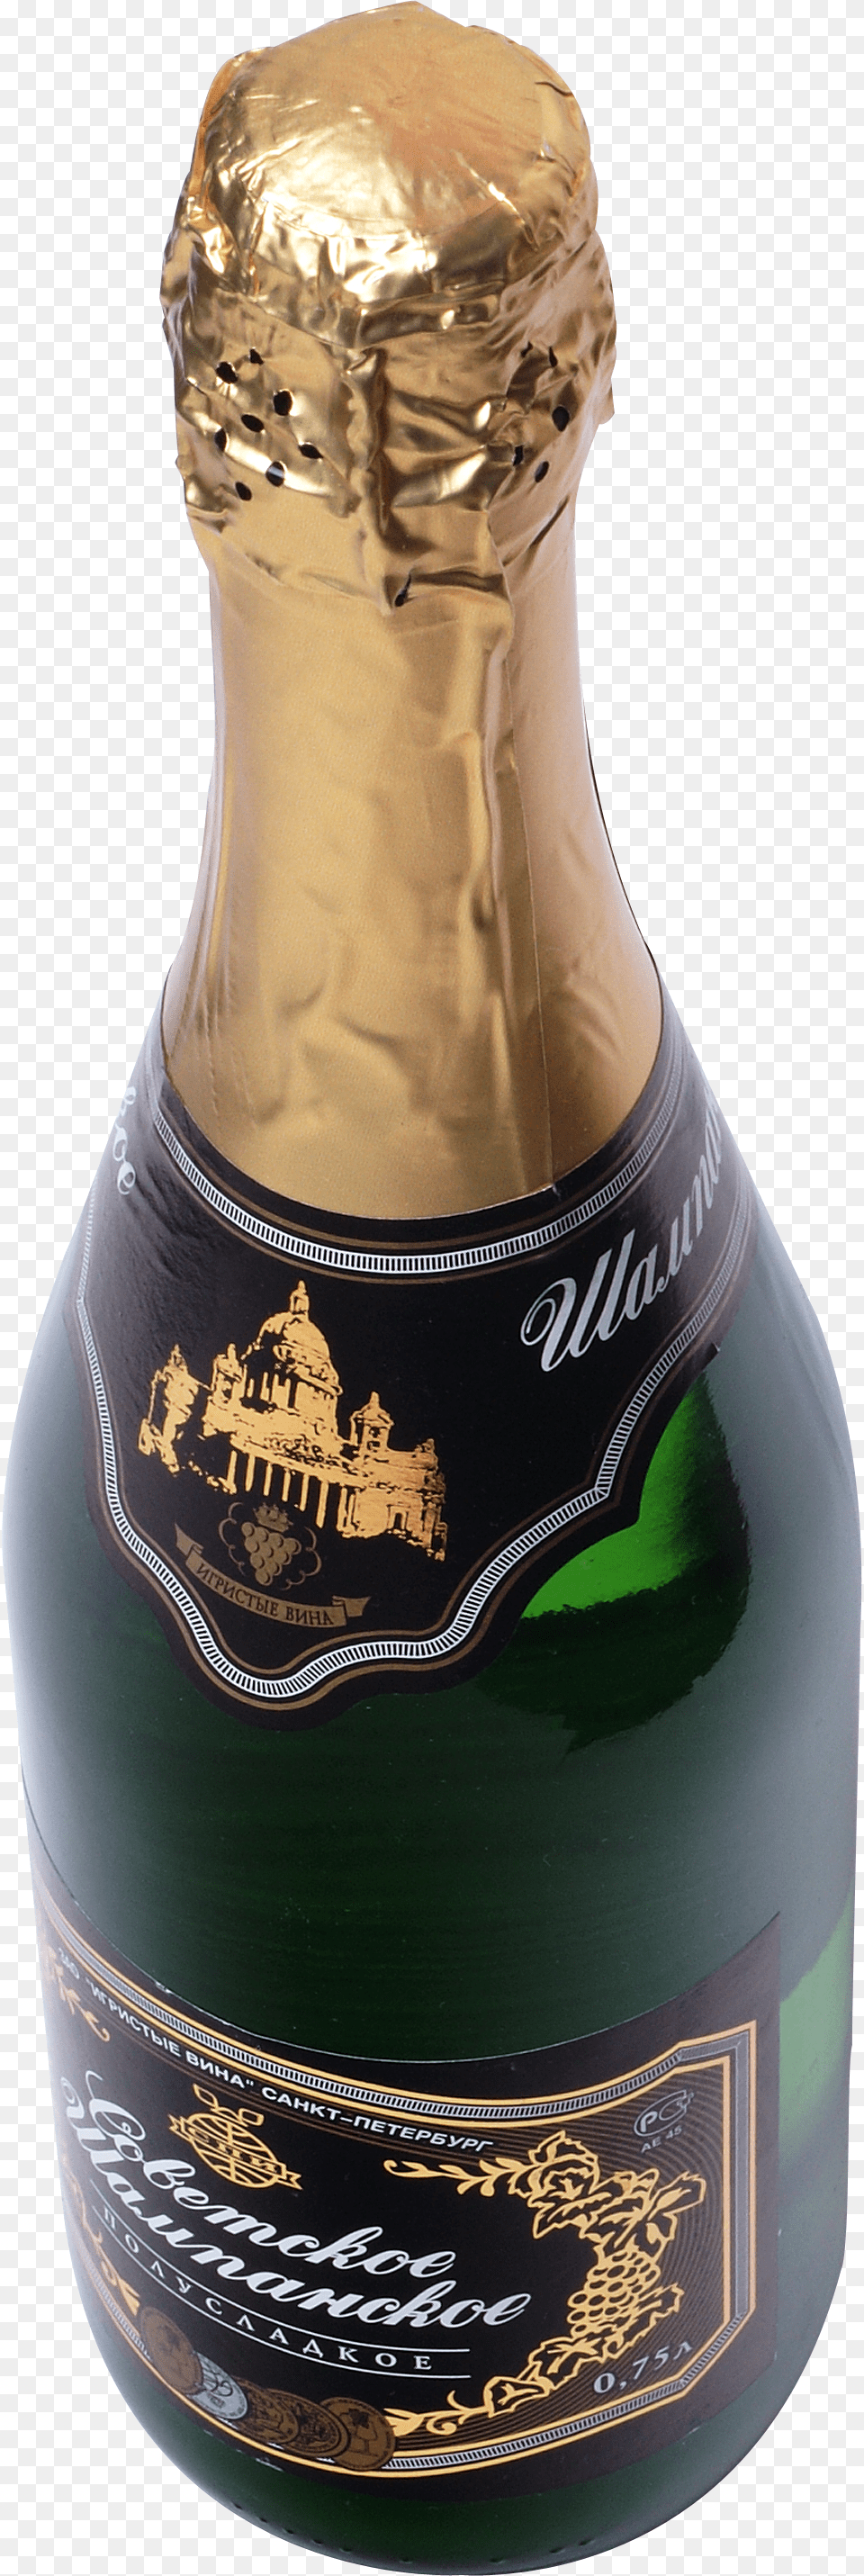 Champagne, Alcohol, Beer, Beverage, Bottle Png Image